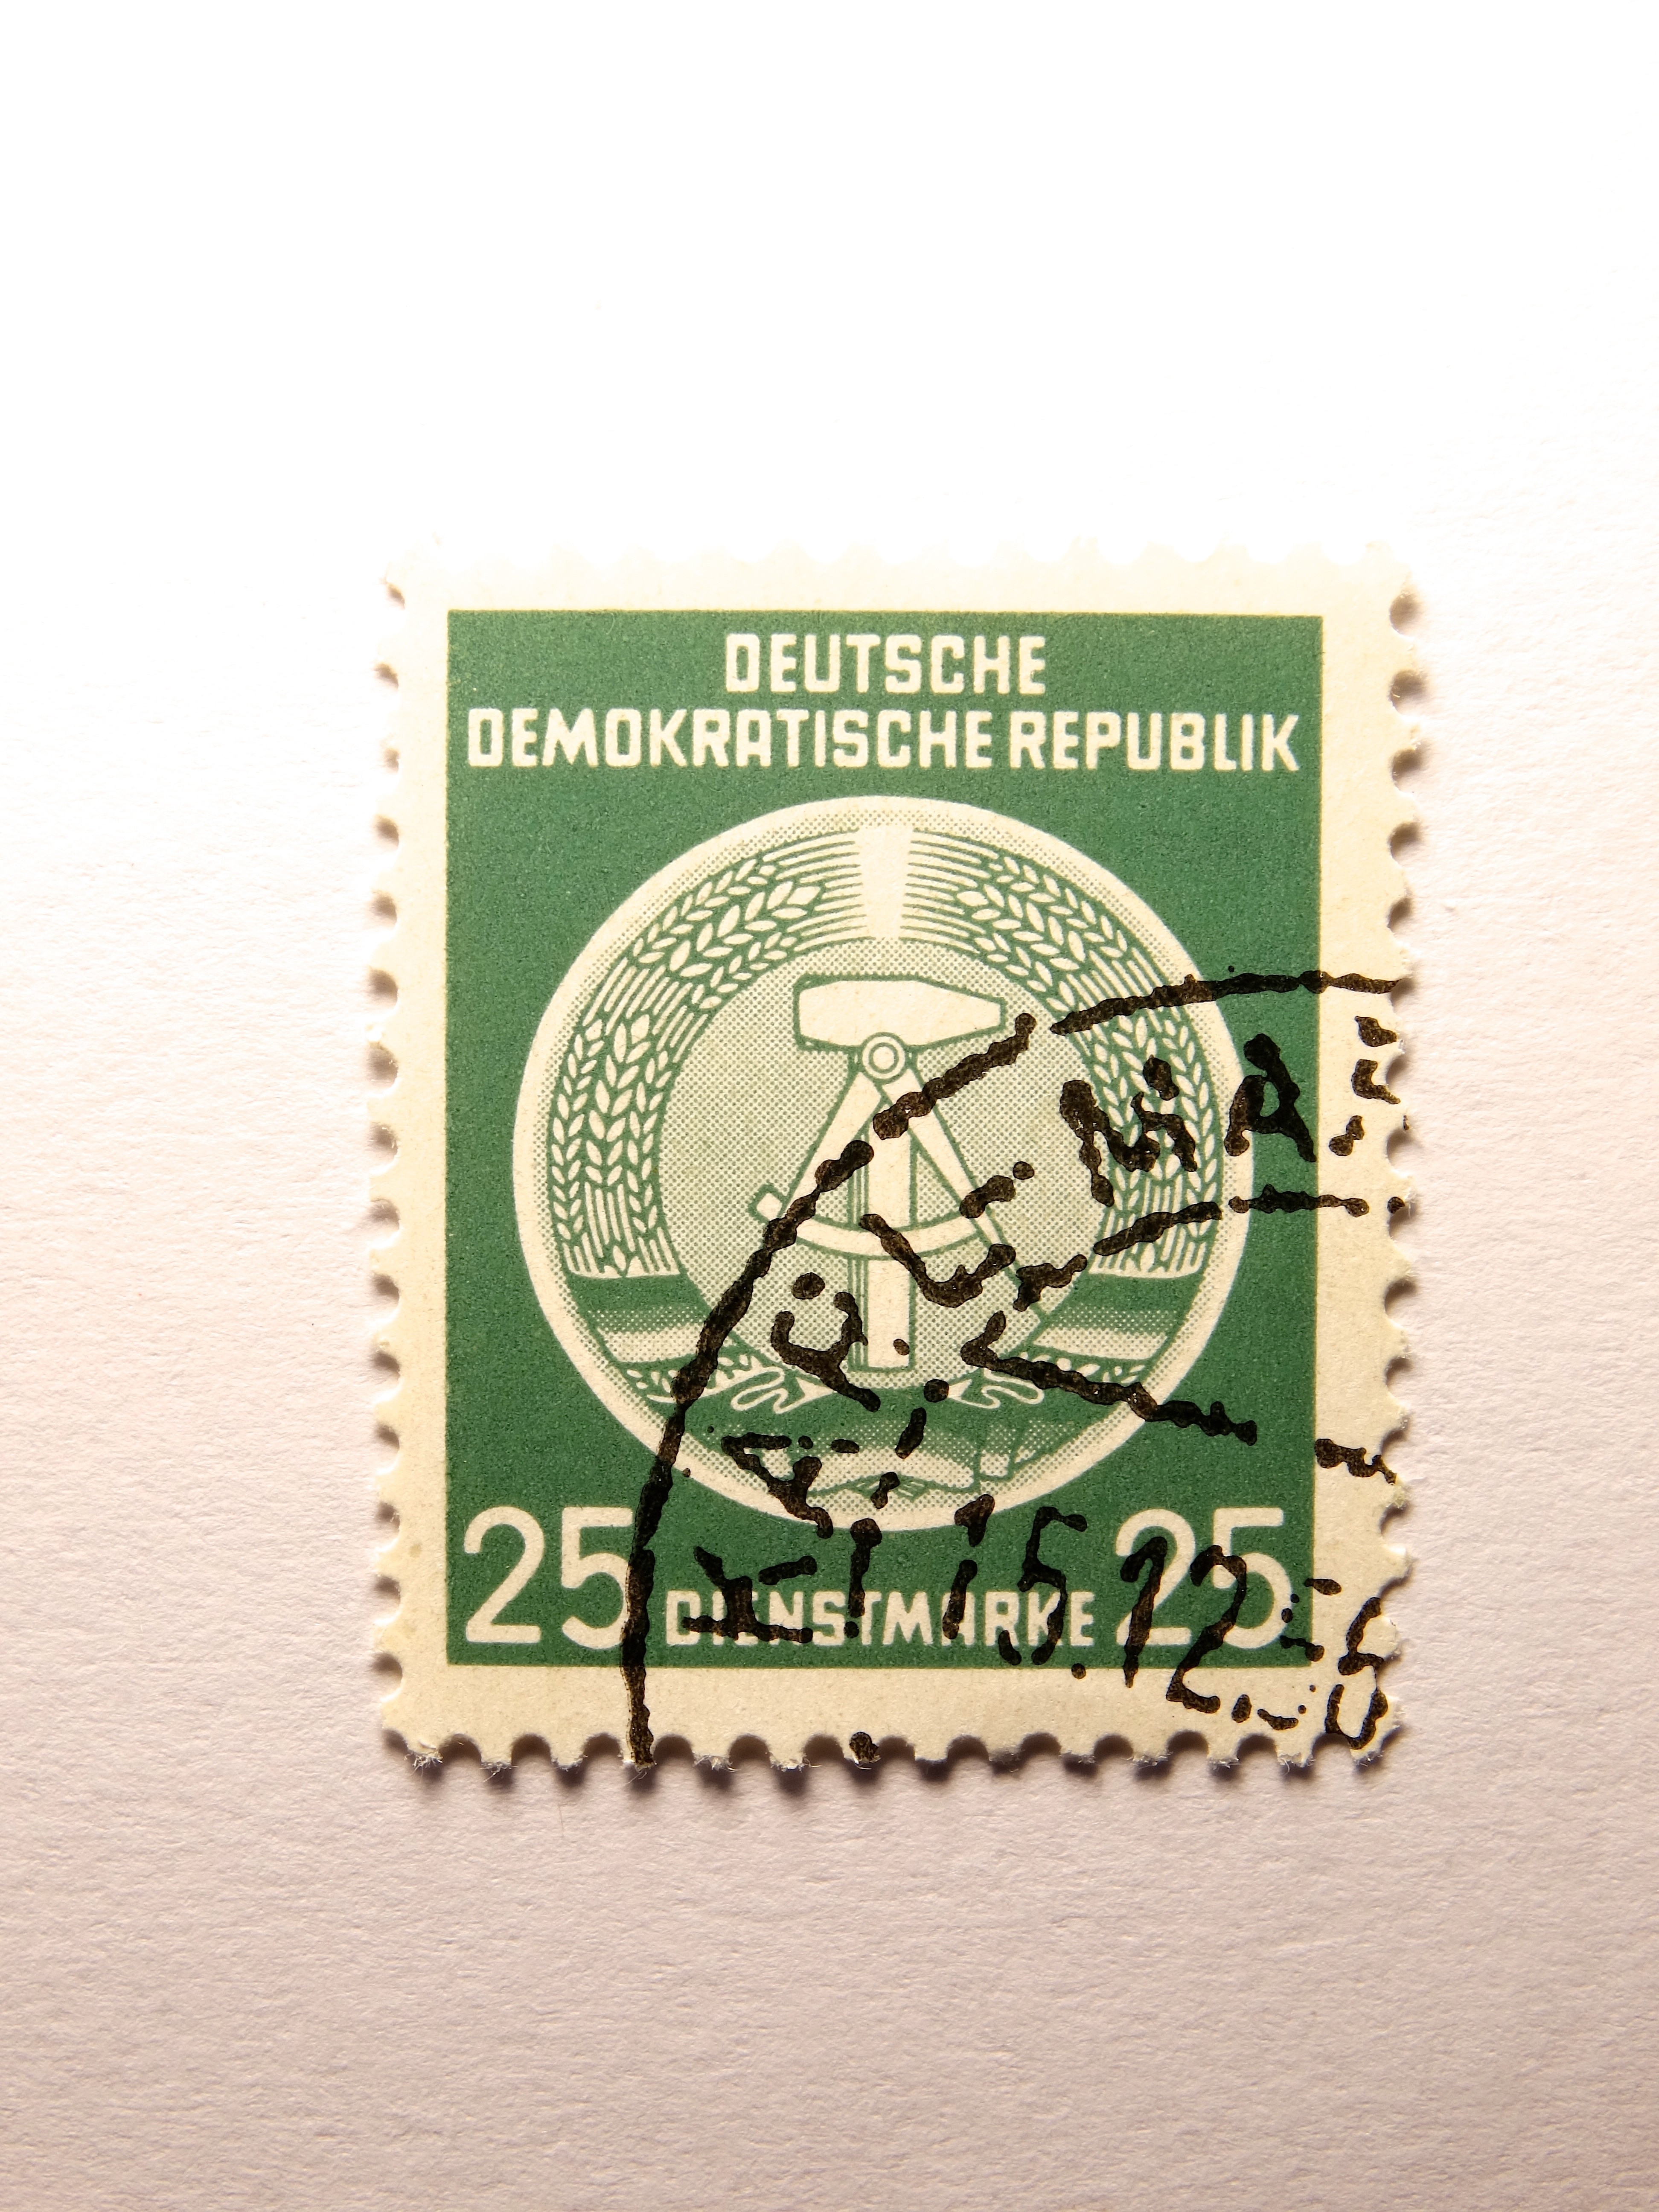 deutsche demokratische republik 25 postage stamp